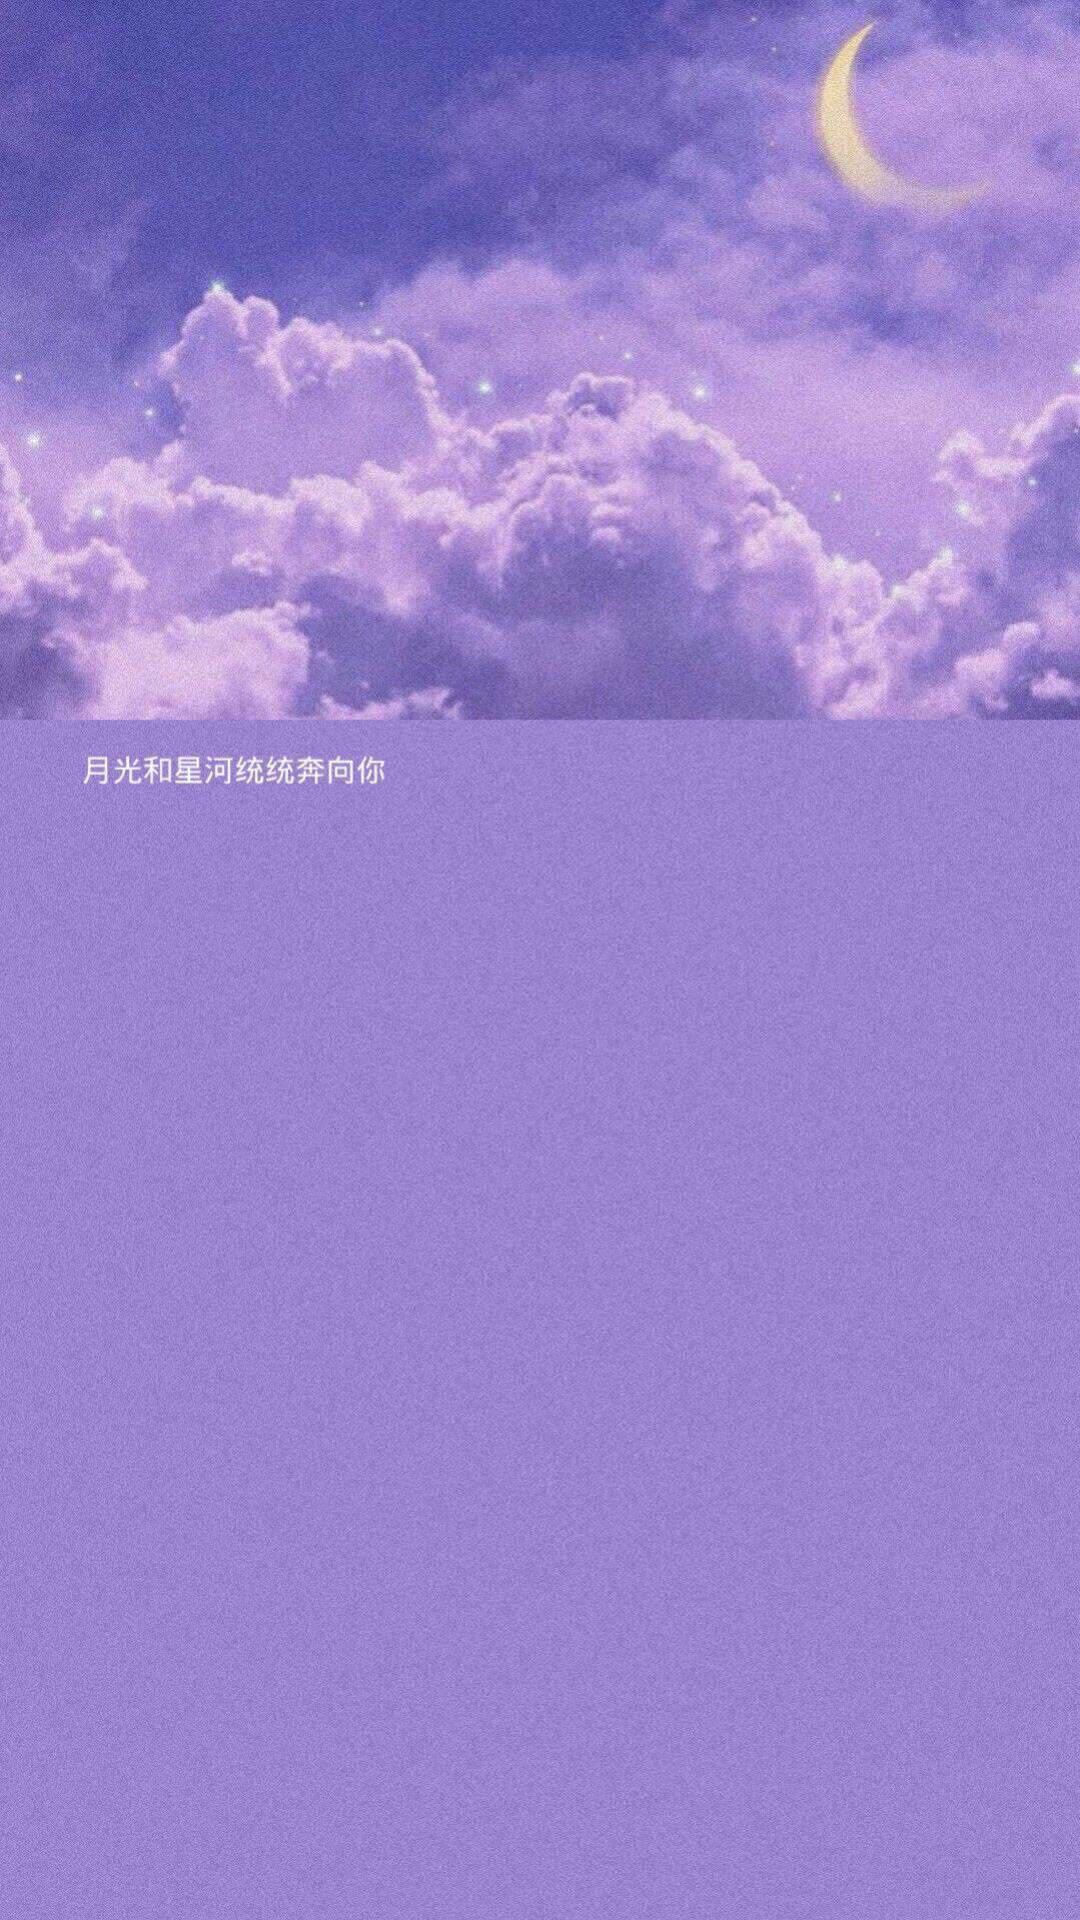 紫色系背景图 | "海洋藏不住我对你的思念"